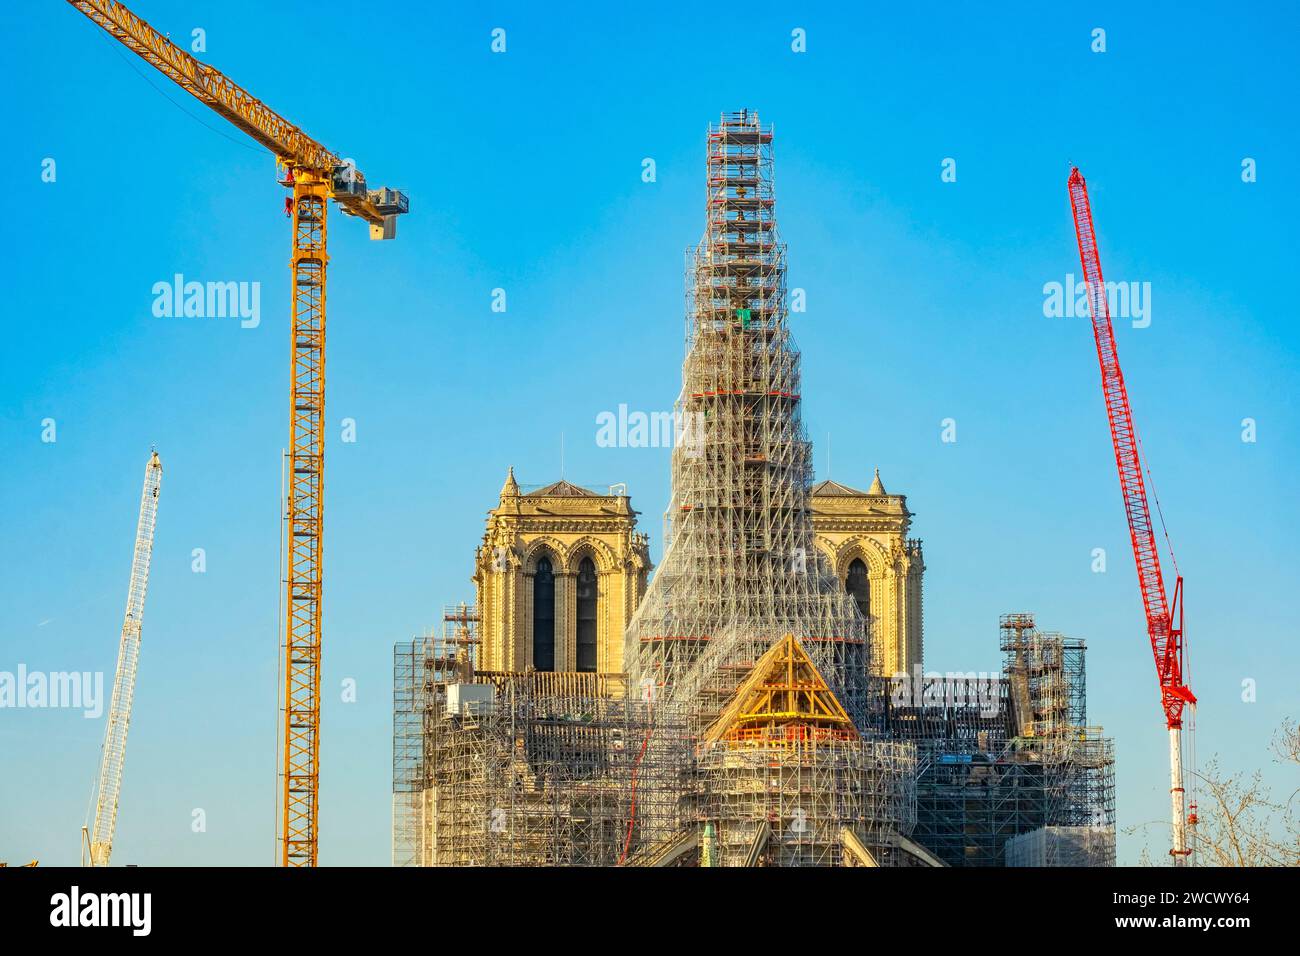 France, Paris, Île de la Cite, Notre Dame de Paris cathedral, restoration scaffolding Stock Photo